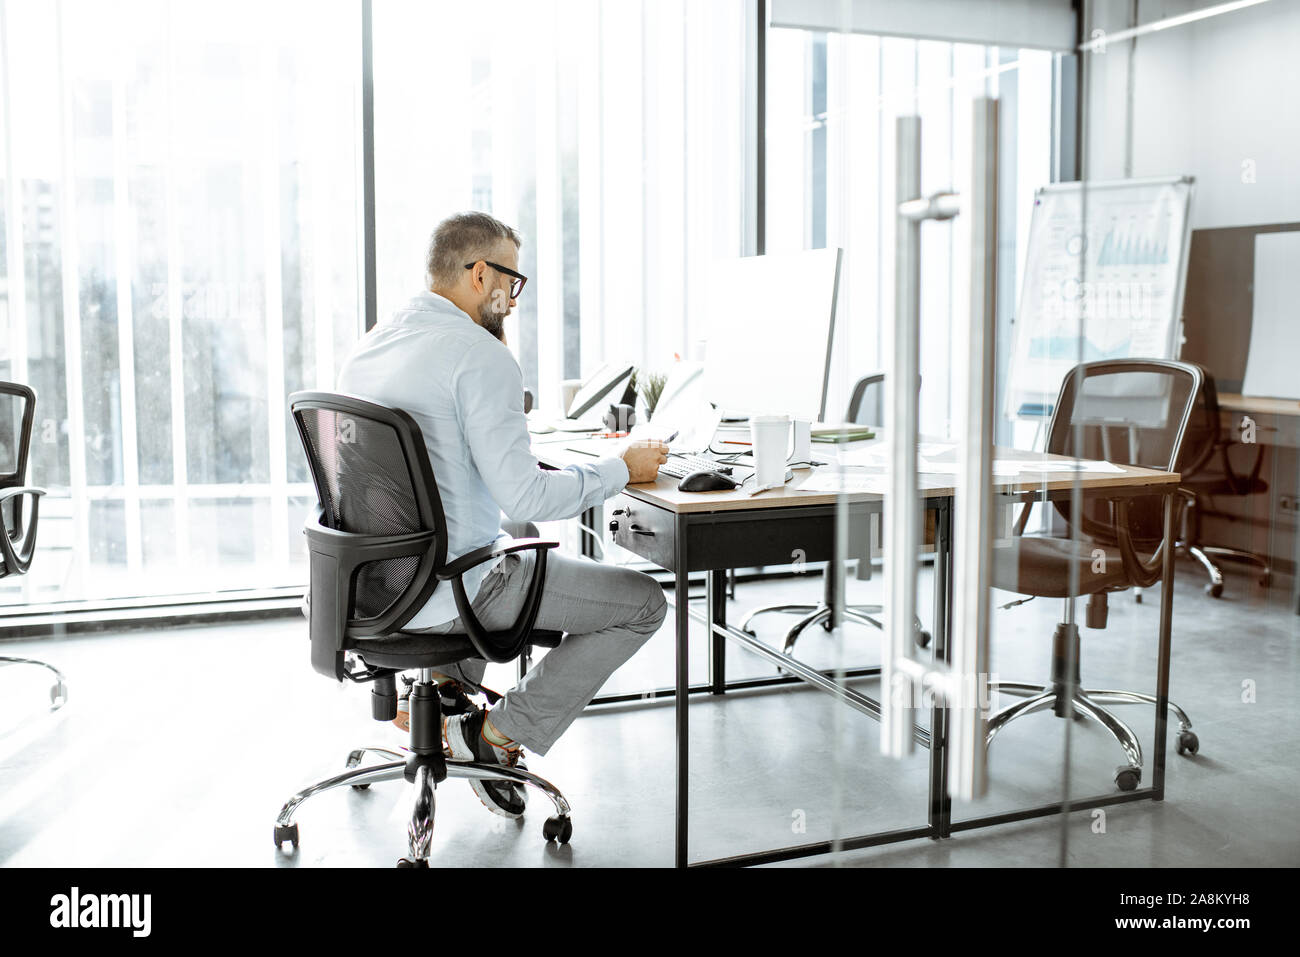 Gestionnaire ou employé de bureau habillé travail nonchalamment sur les ordinateurs au bureau ou espace de coworking Banque D'Images